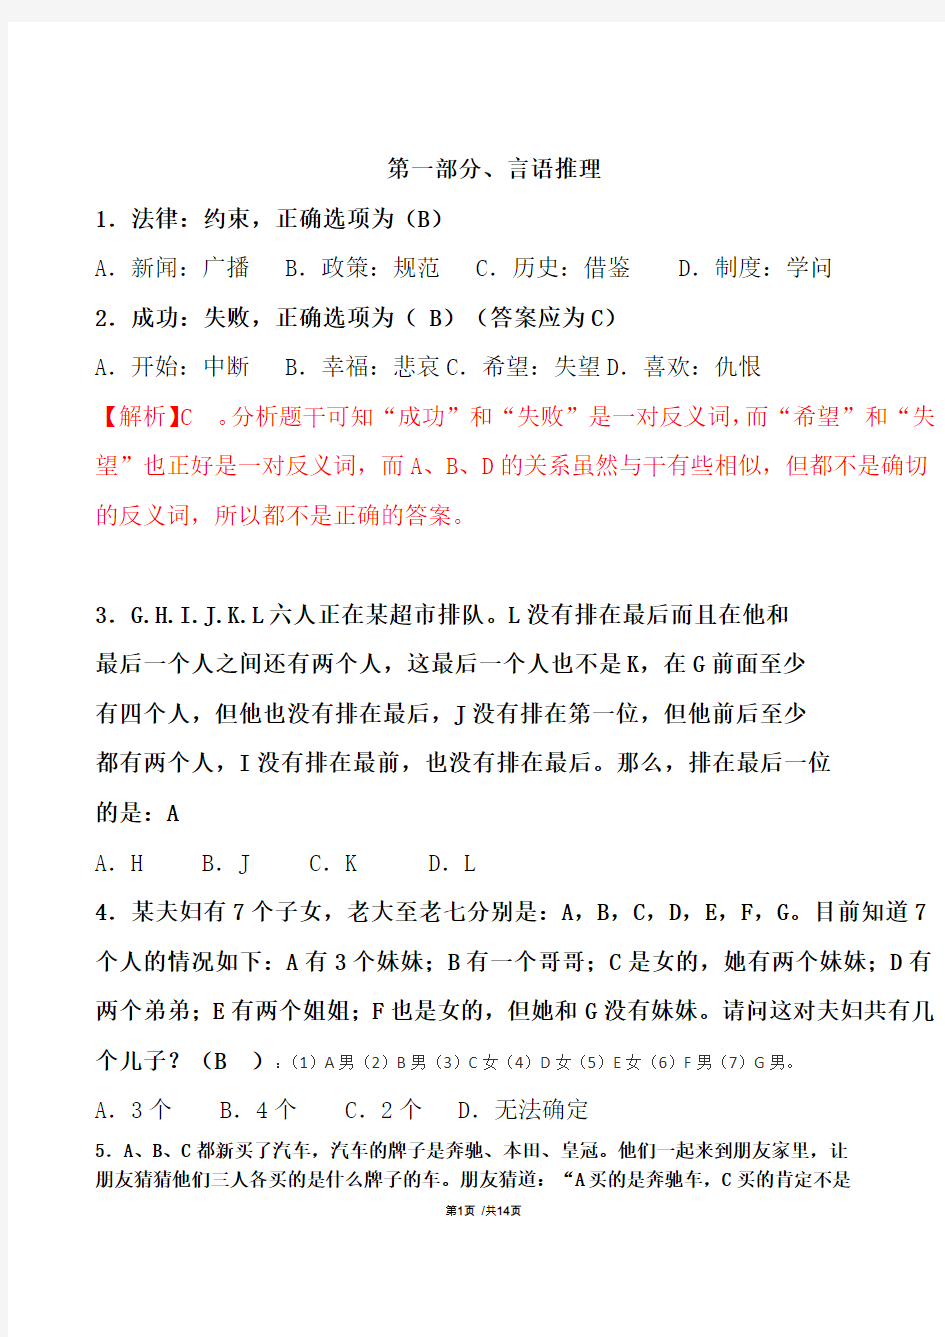 (2014223答题01)深圳航空笔试第三套试题